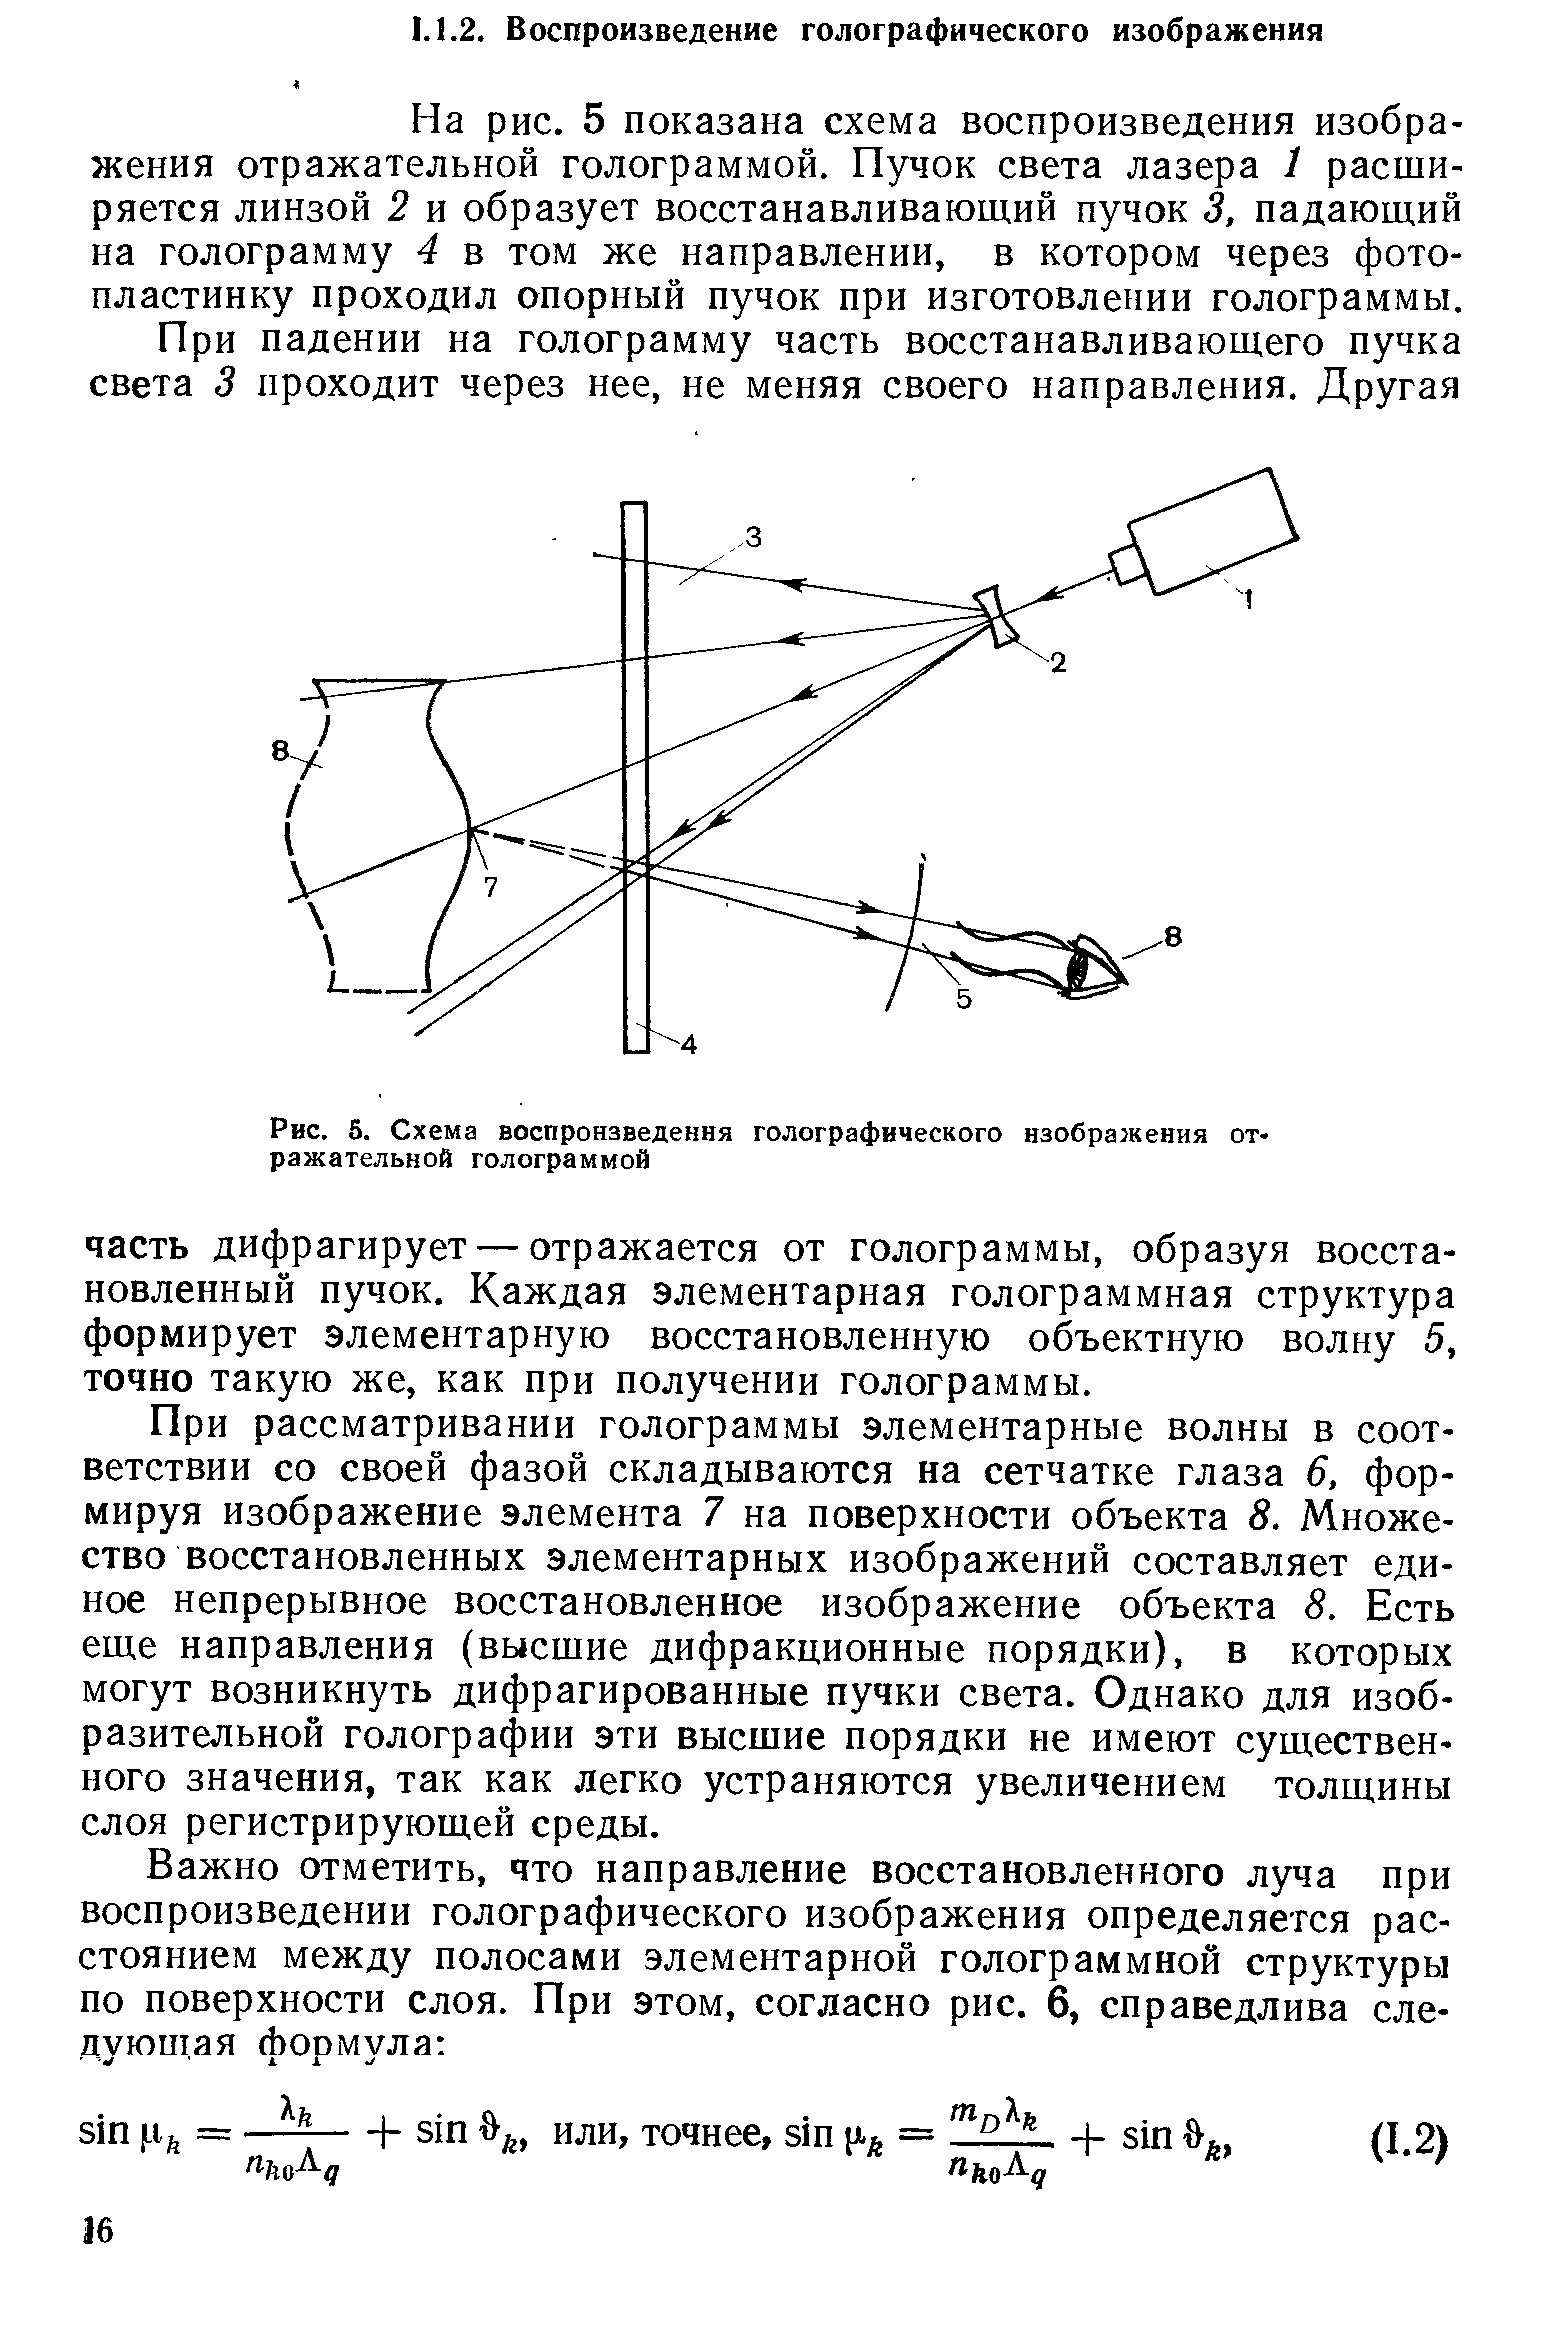 Рис. 5. Схема воспроизведения голографического изображения отражательной голограммой
